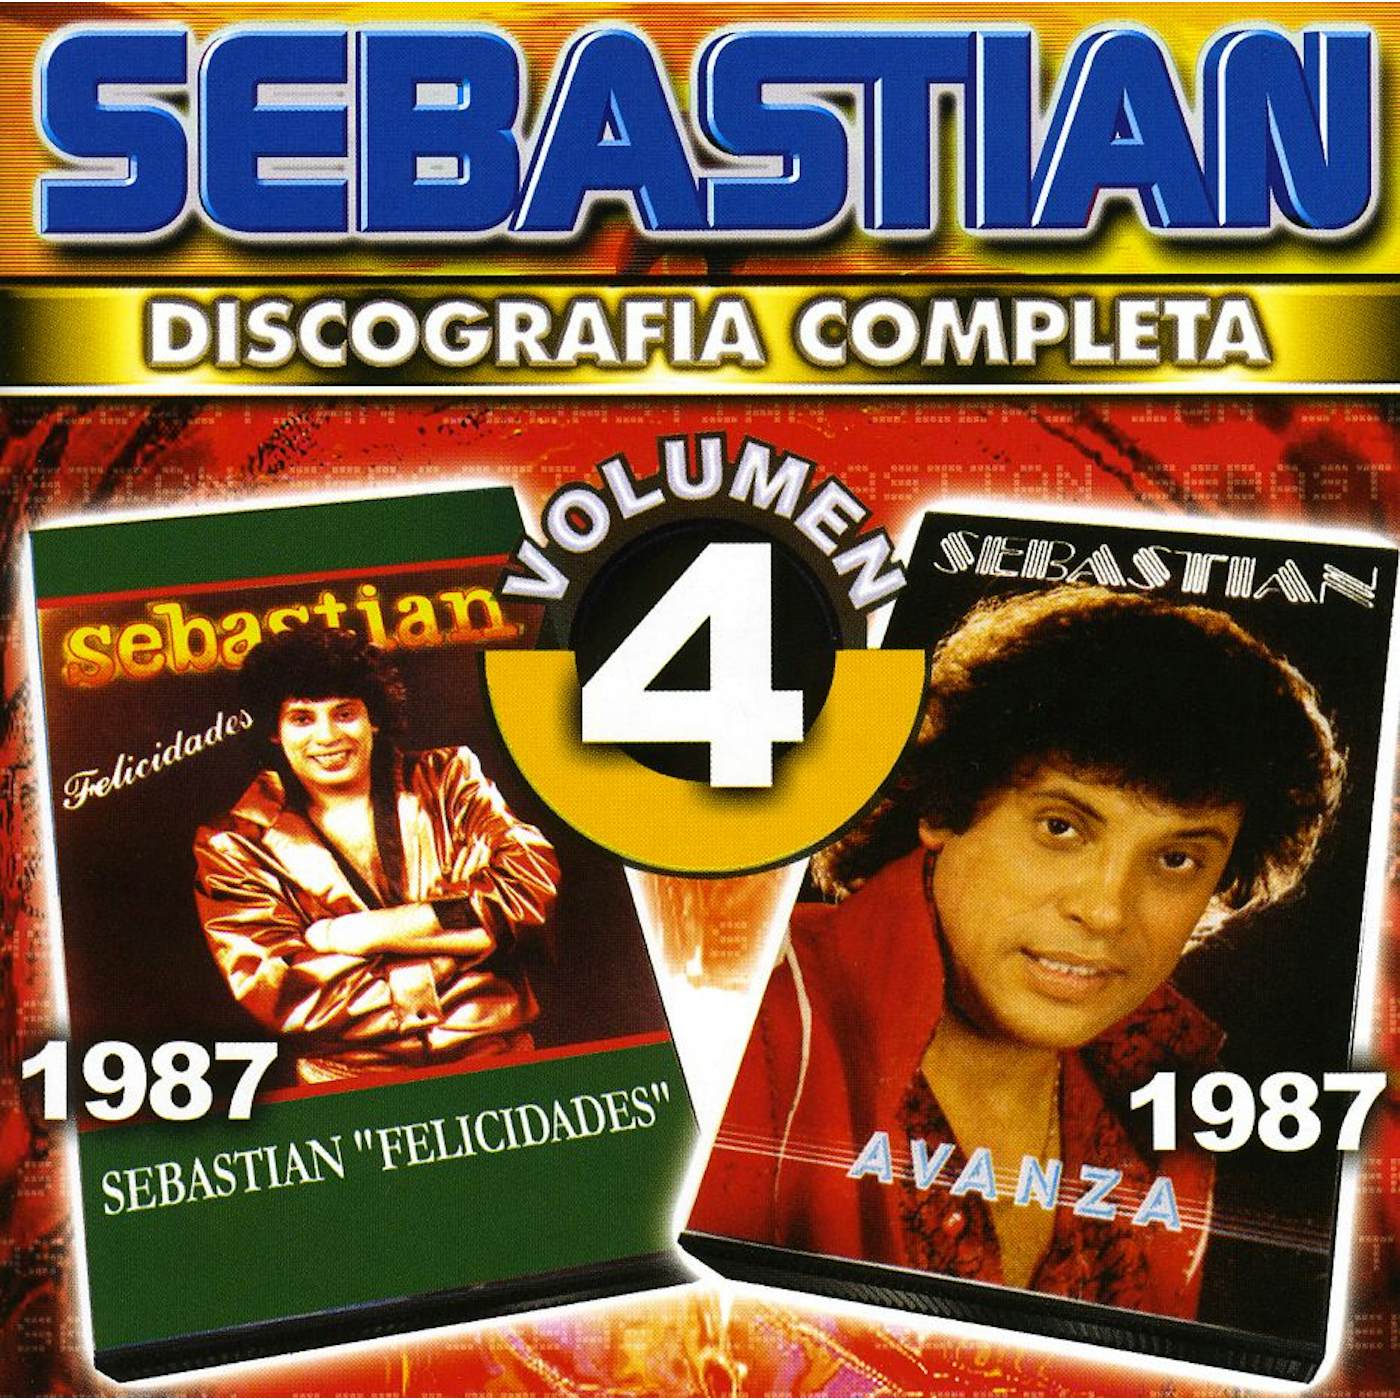 SebastiAn DISCOGRAFIA COMPLETA 4 CD